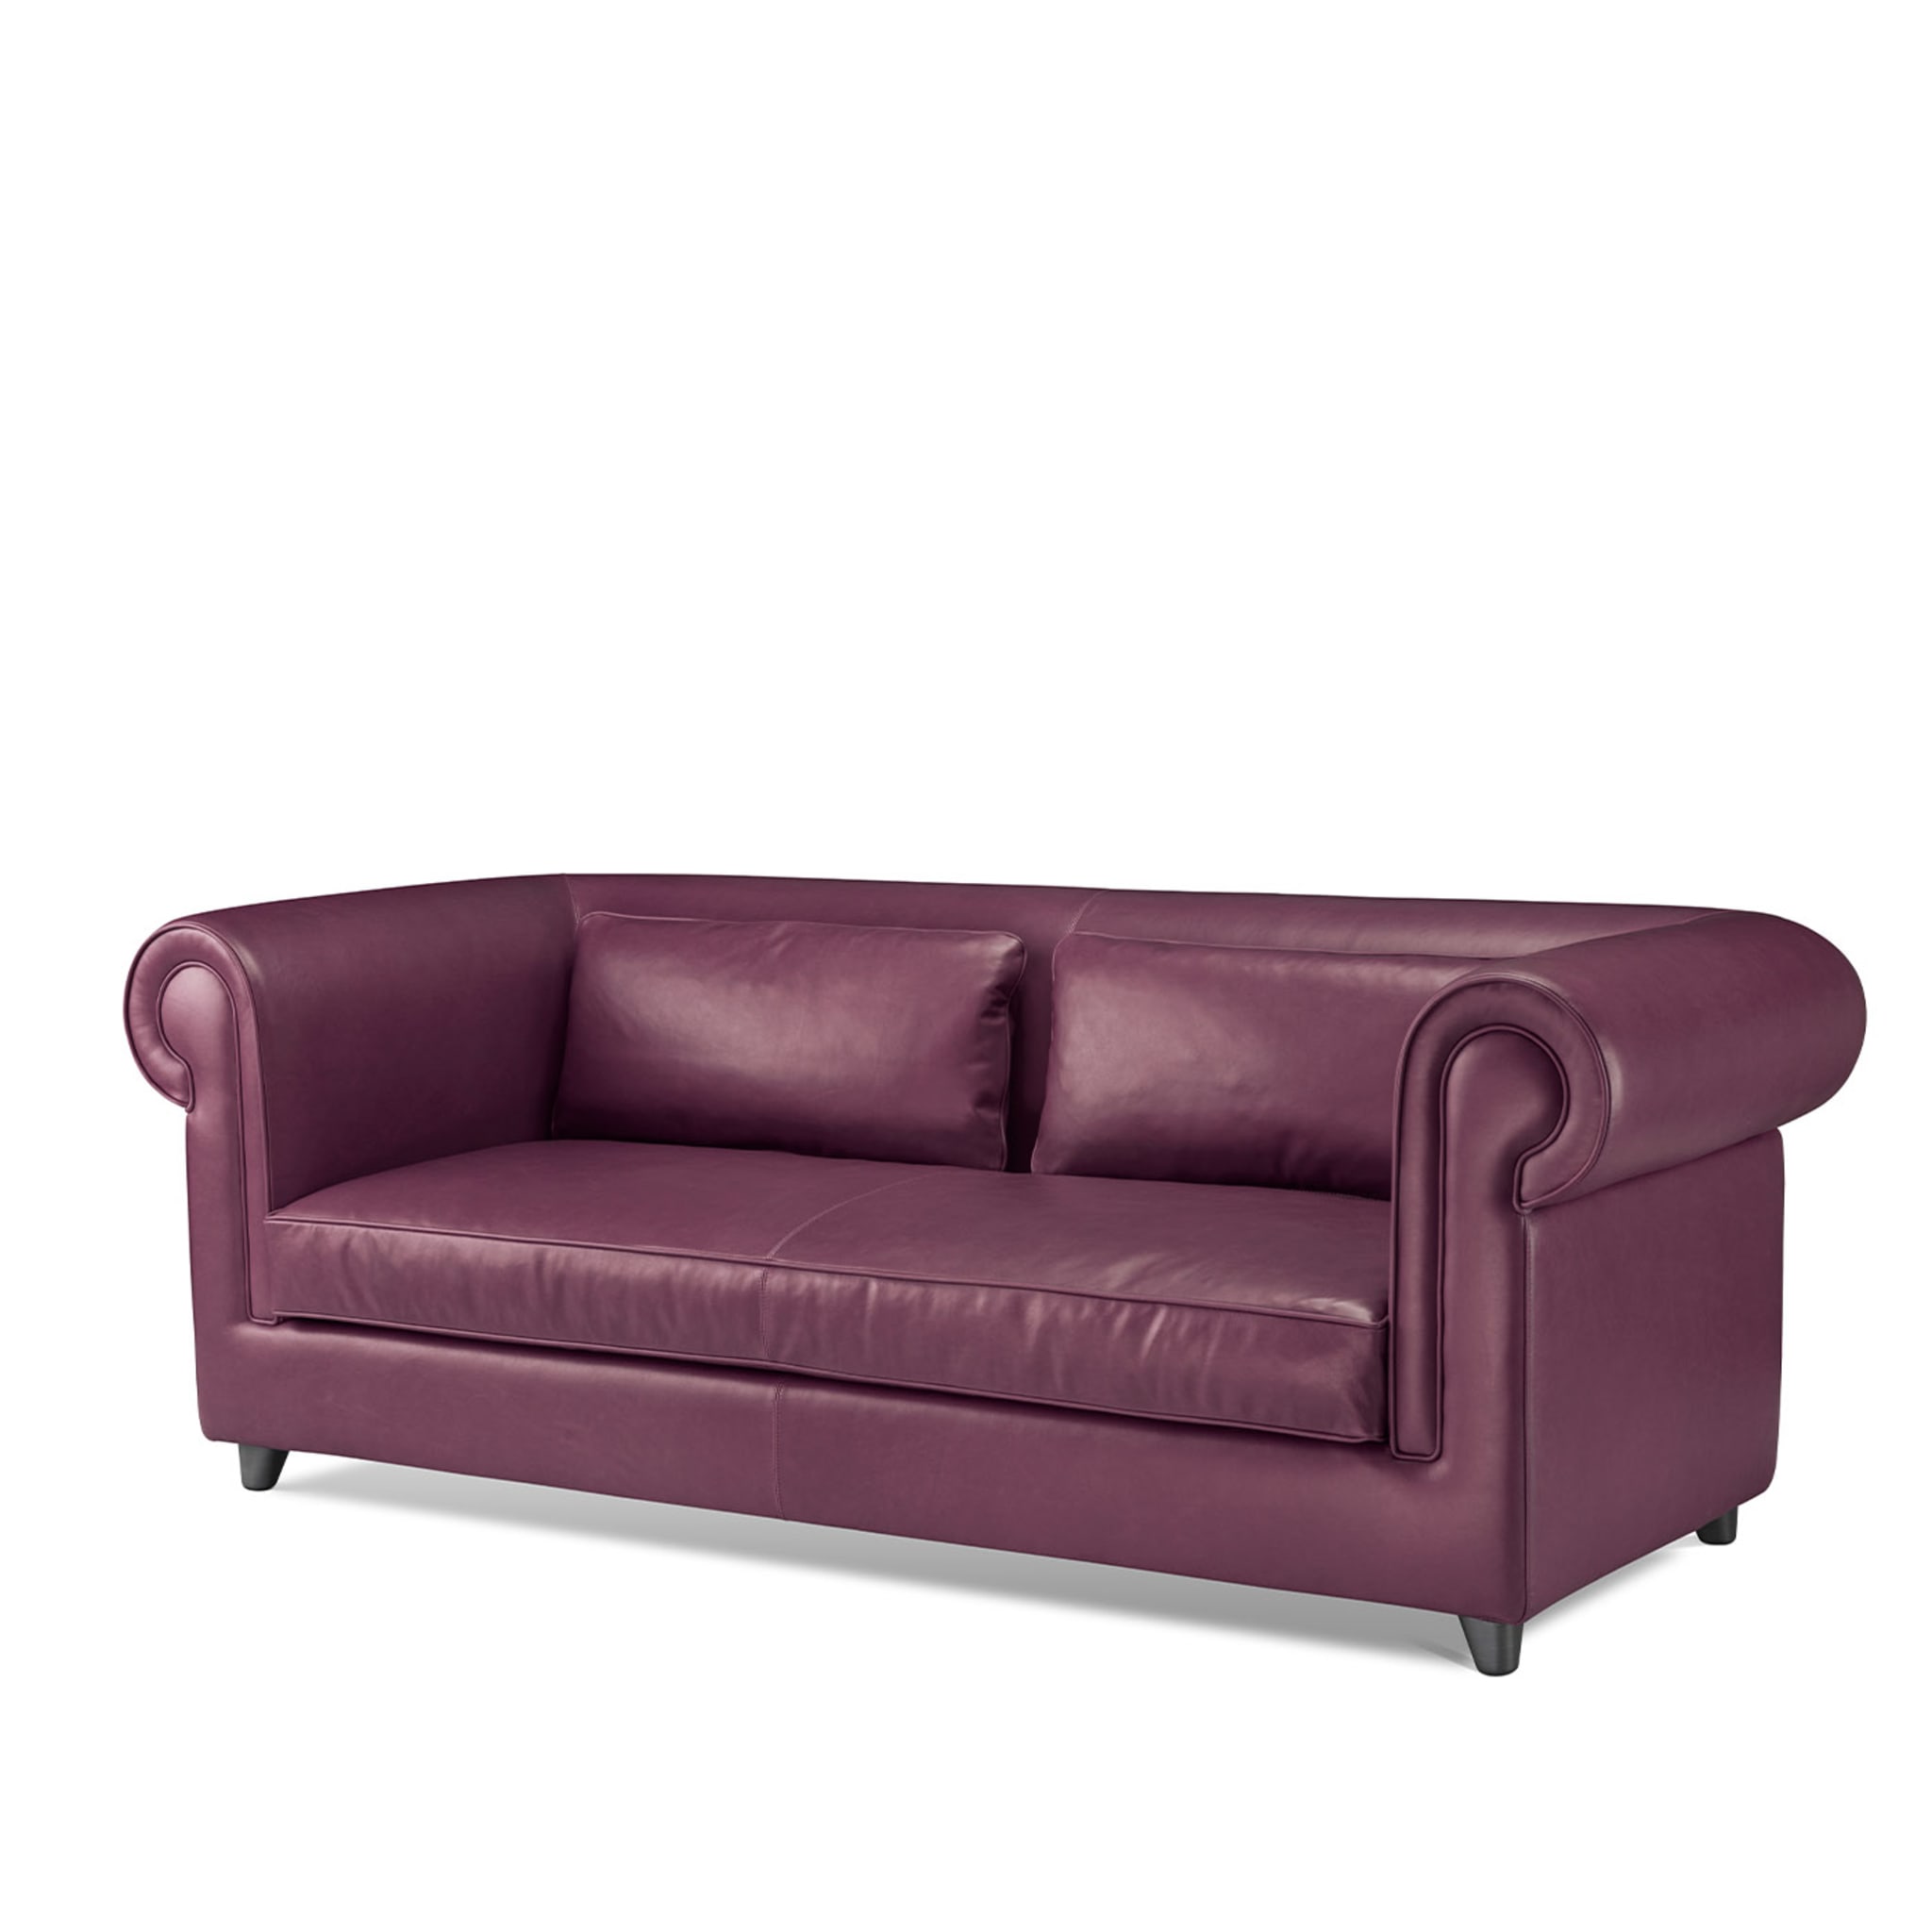 Portofino 2-Seater Purple Sofa by Stefano Giovannoni - Vue alternative 2